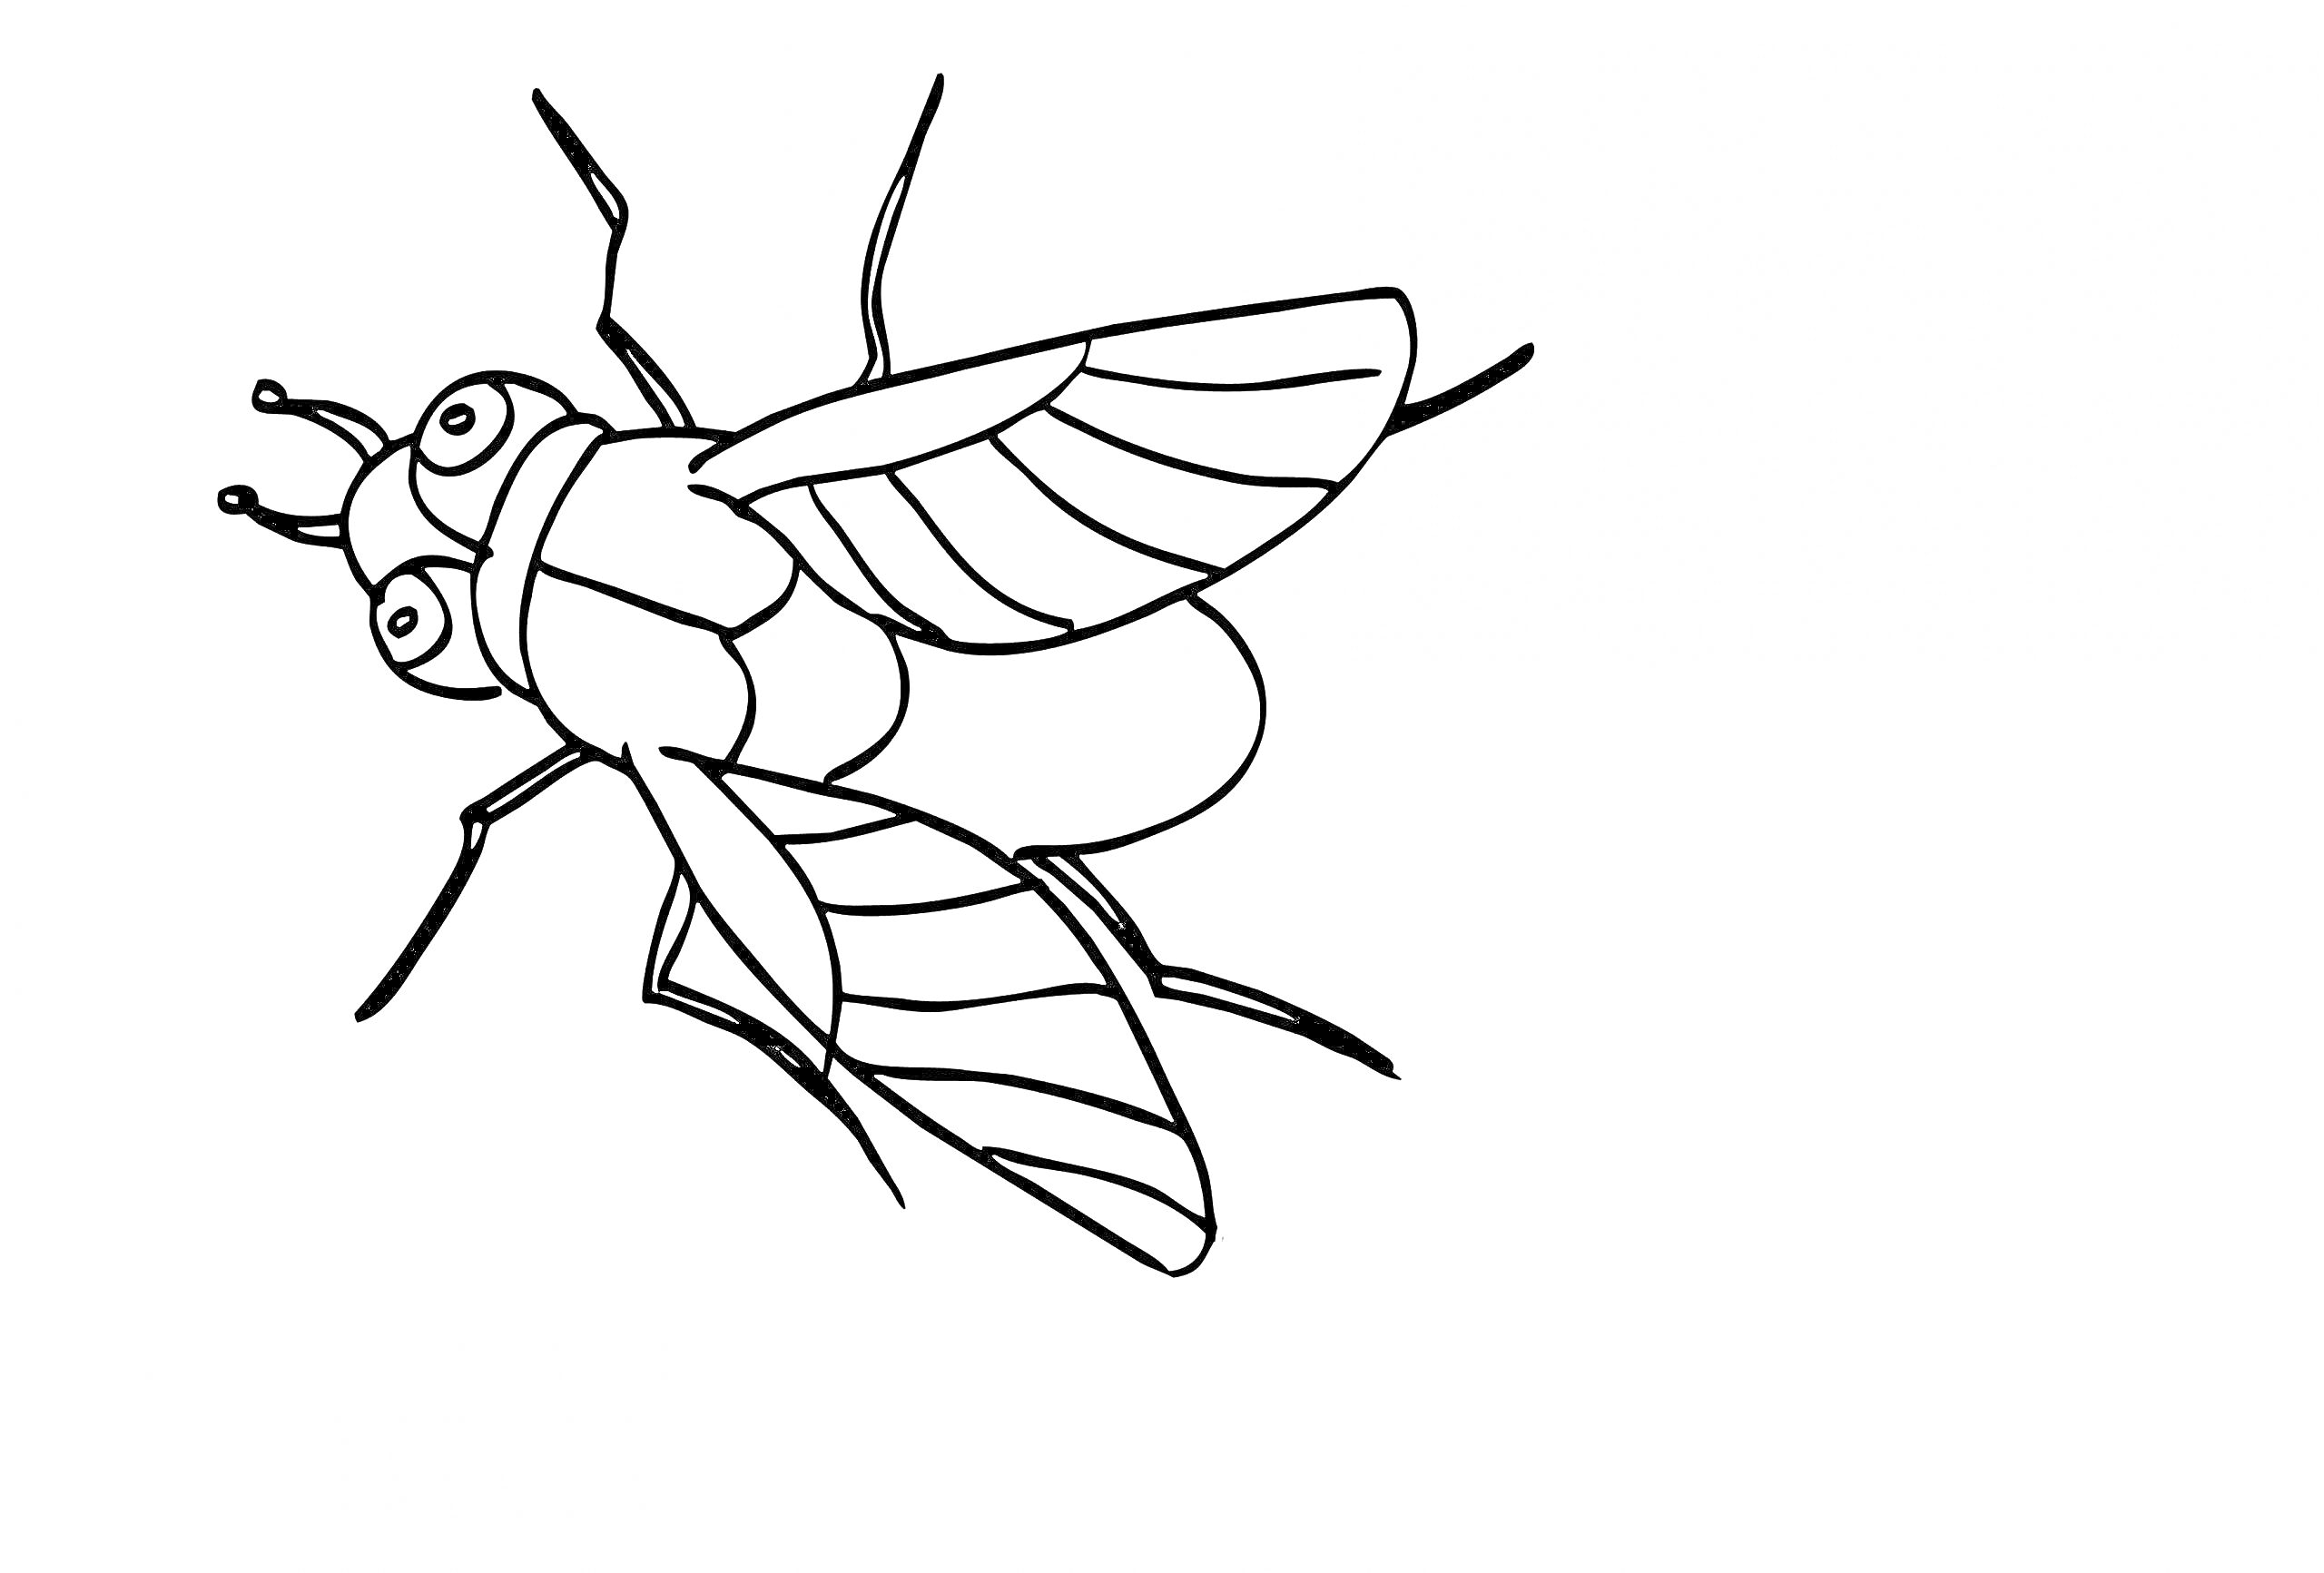 Раскраска с изображением мухи с шестью лапками и двумя крыльями